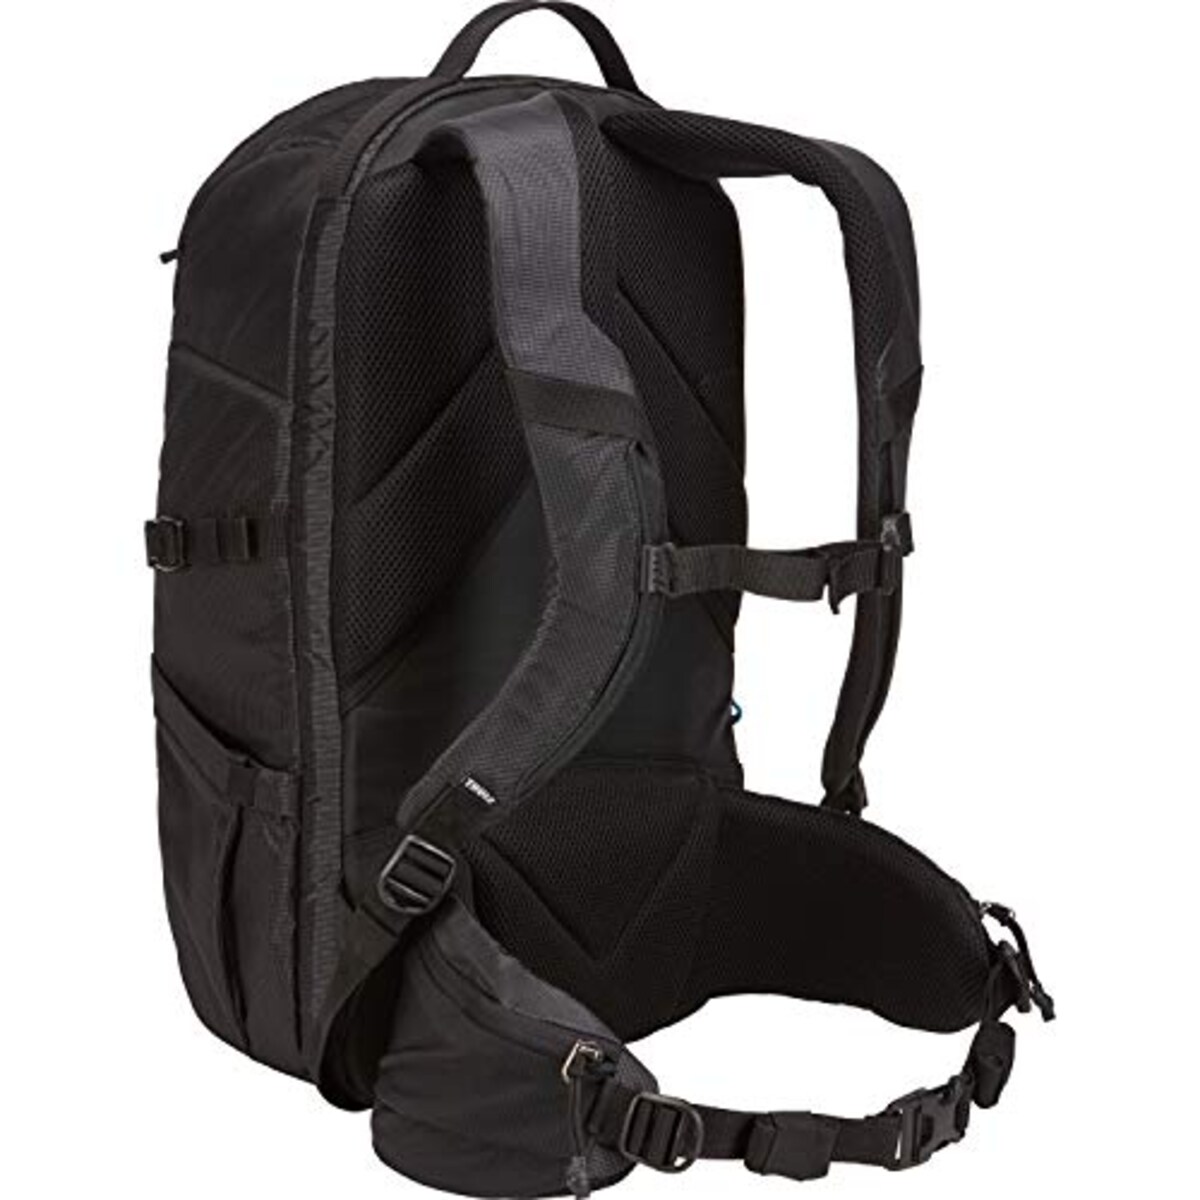  [スーリー]リュック Thule Aspect DSLR Backpack デジタル一眼レフカメラ収納用 TAC106 Black画像2 